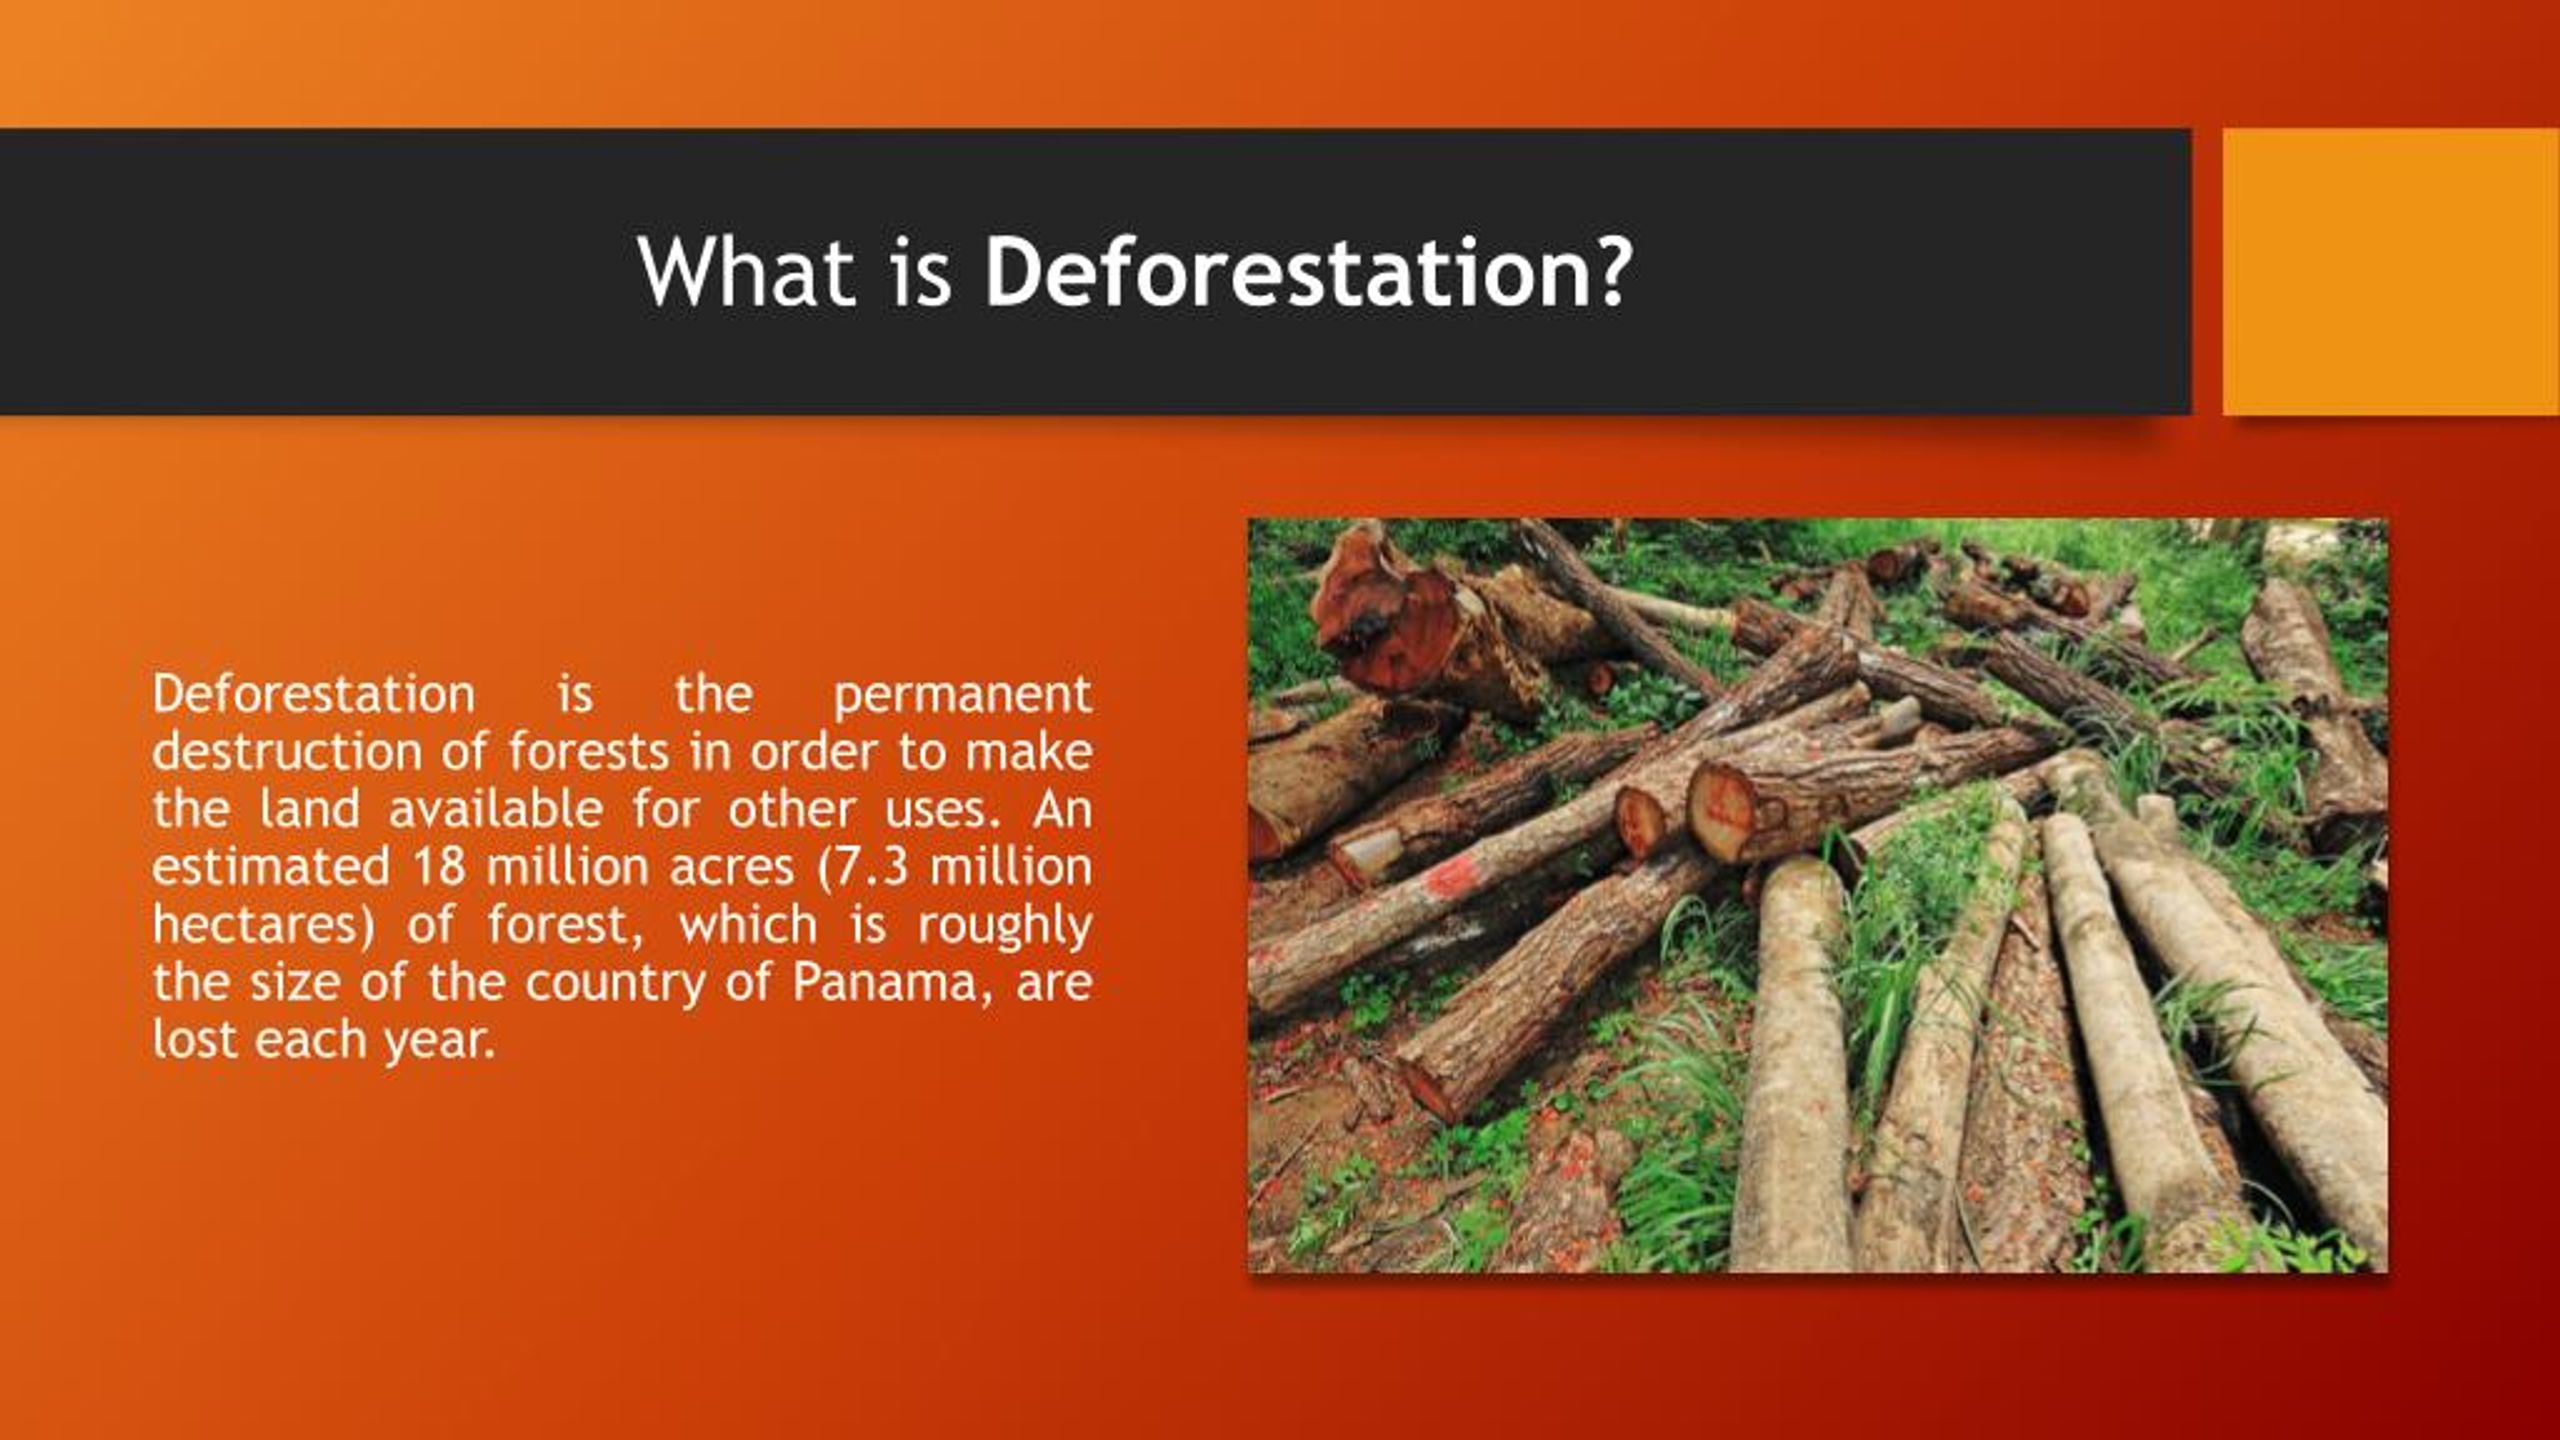 deforestation ppt presentation free download